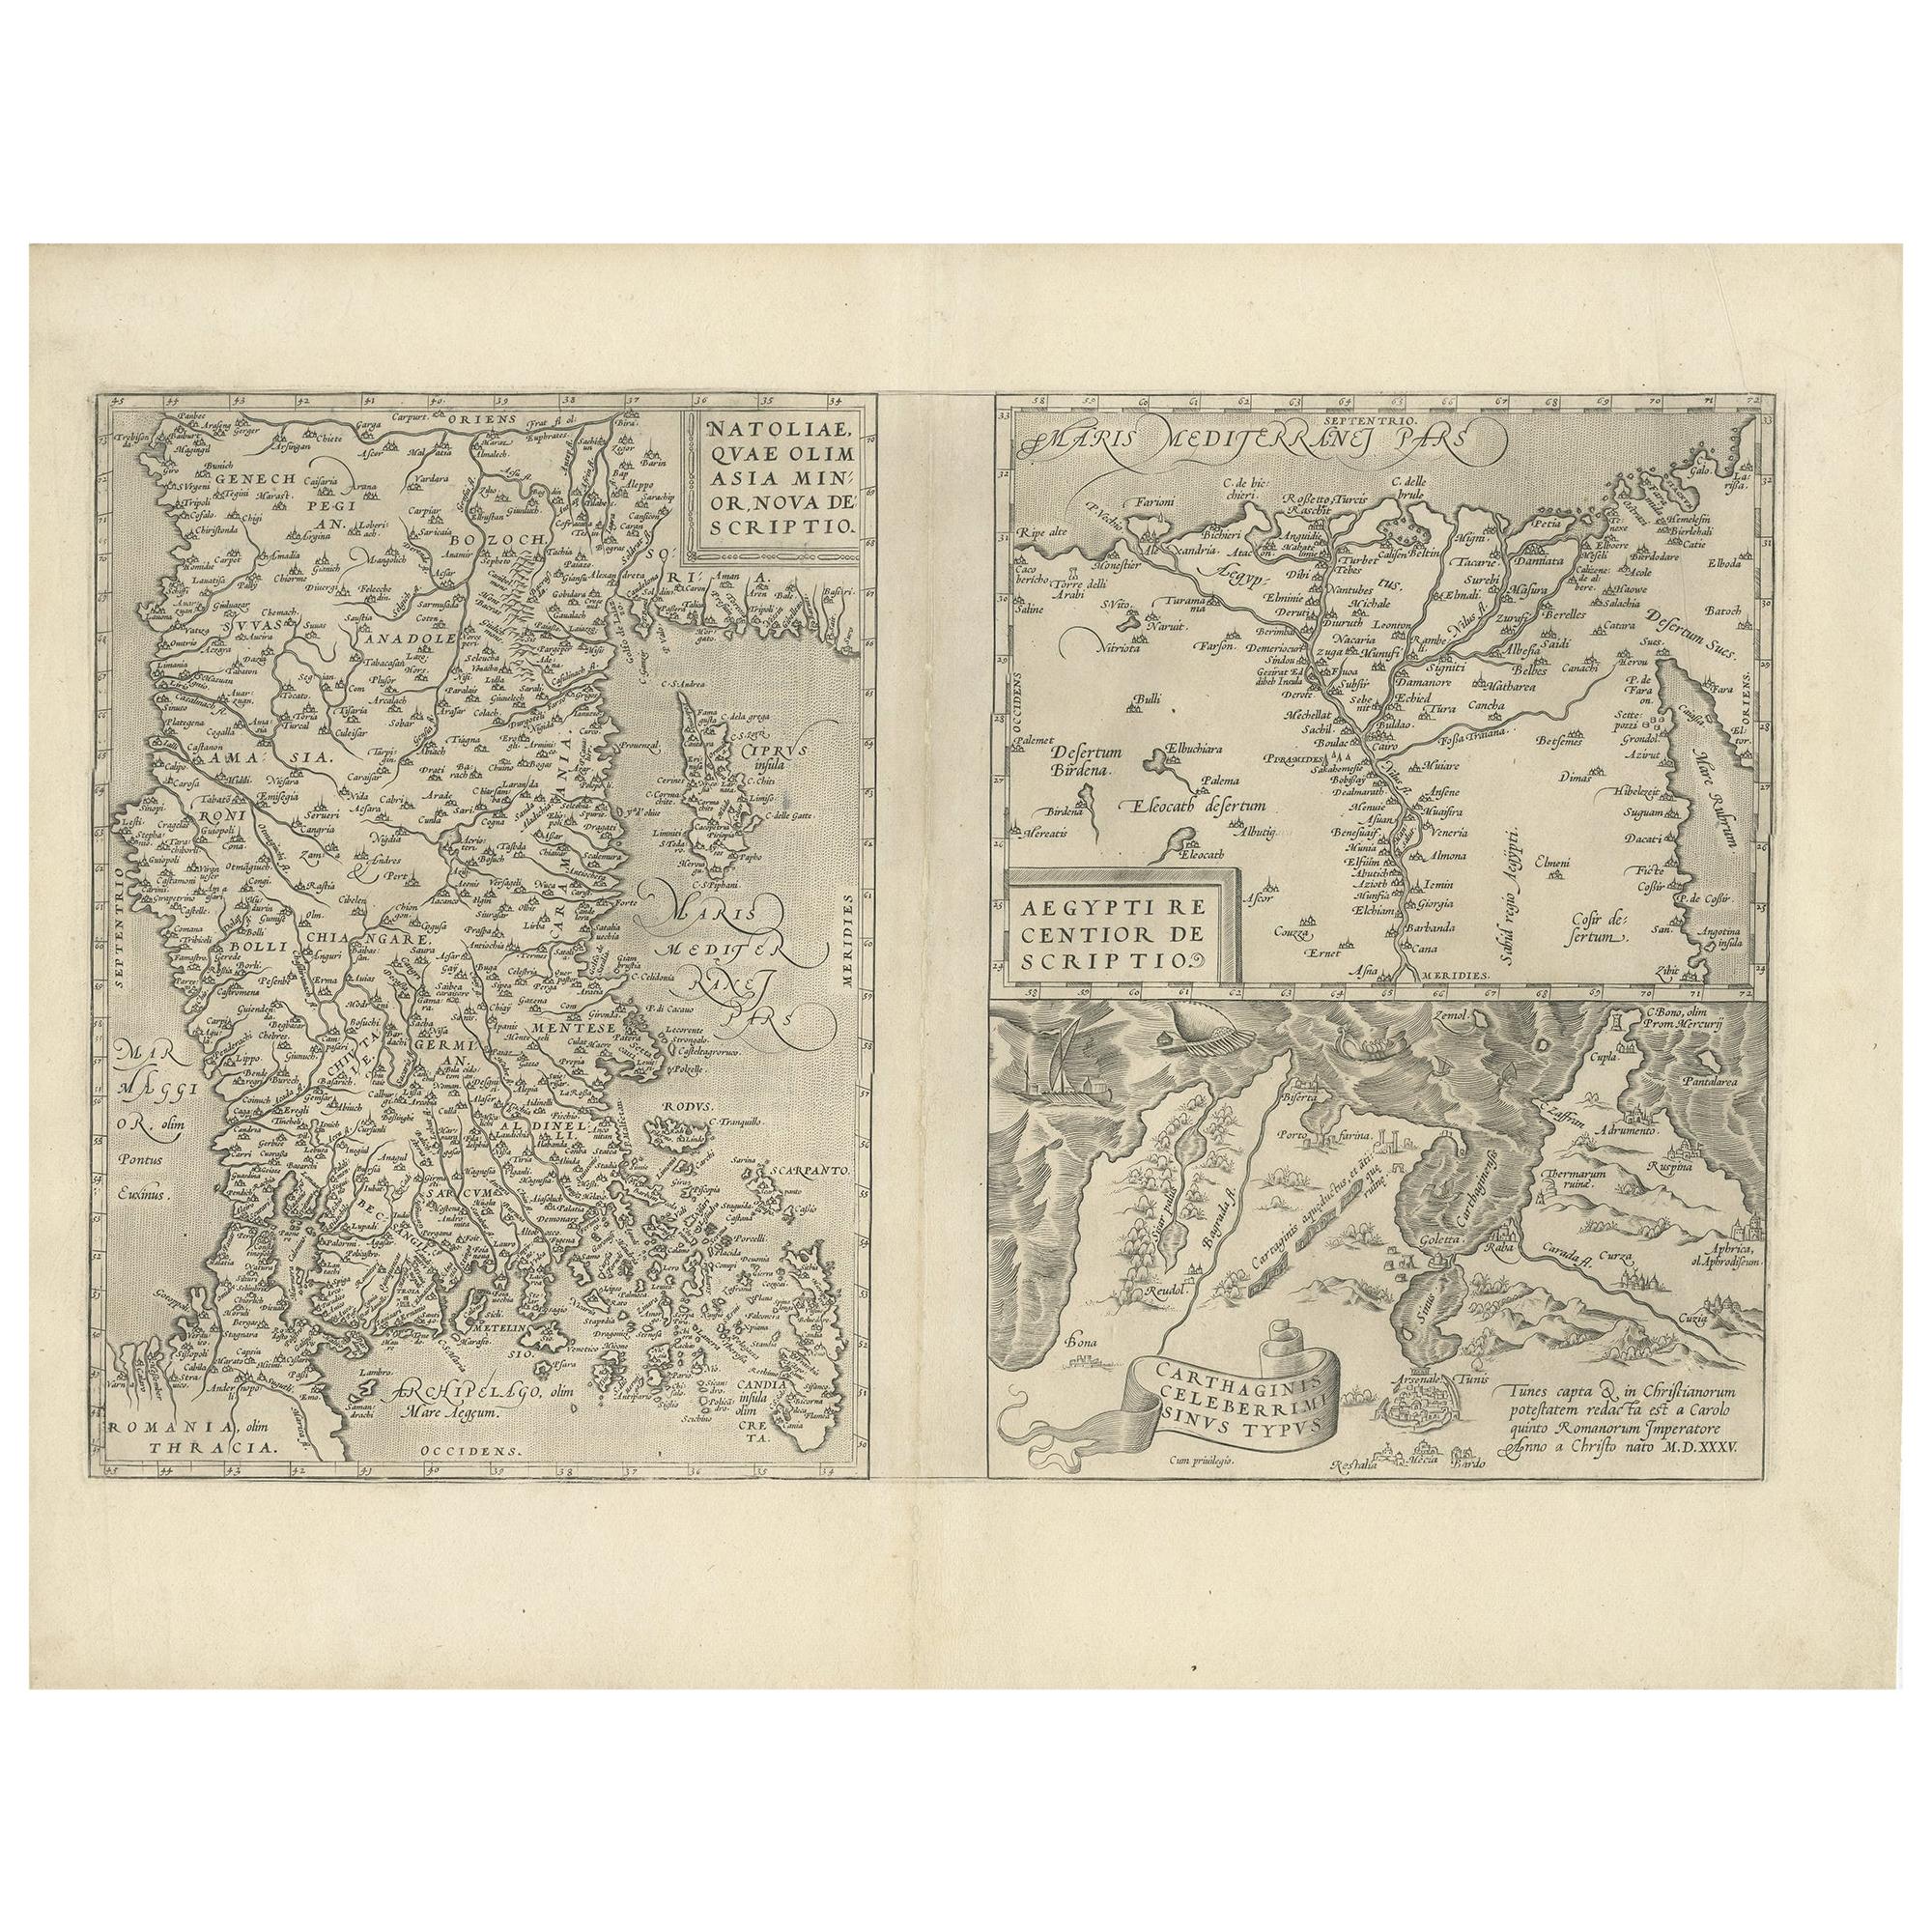 Carte ancienne d'Asie mineure, région du Nile et région de la ville de Carthage